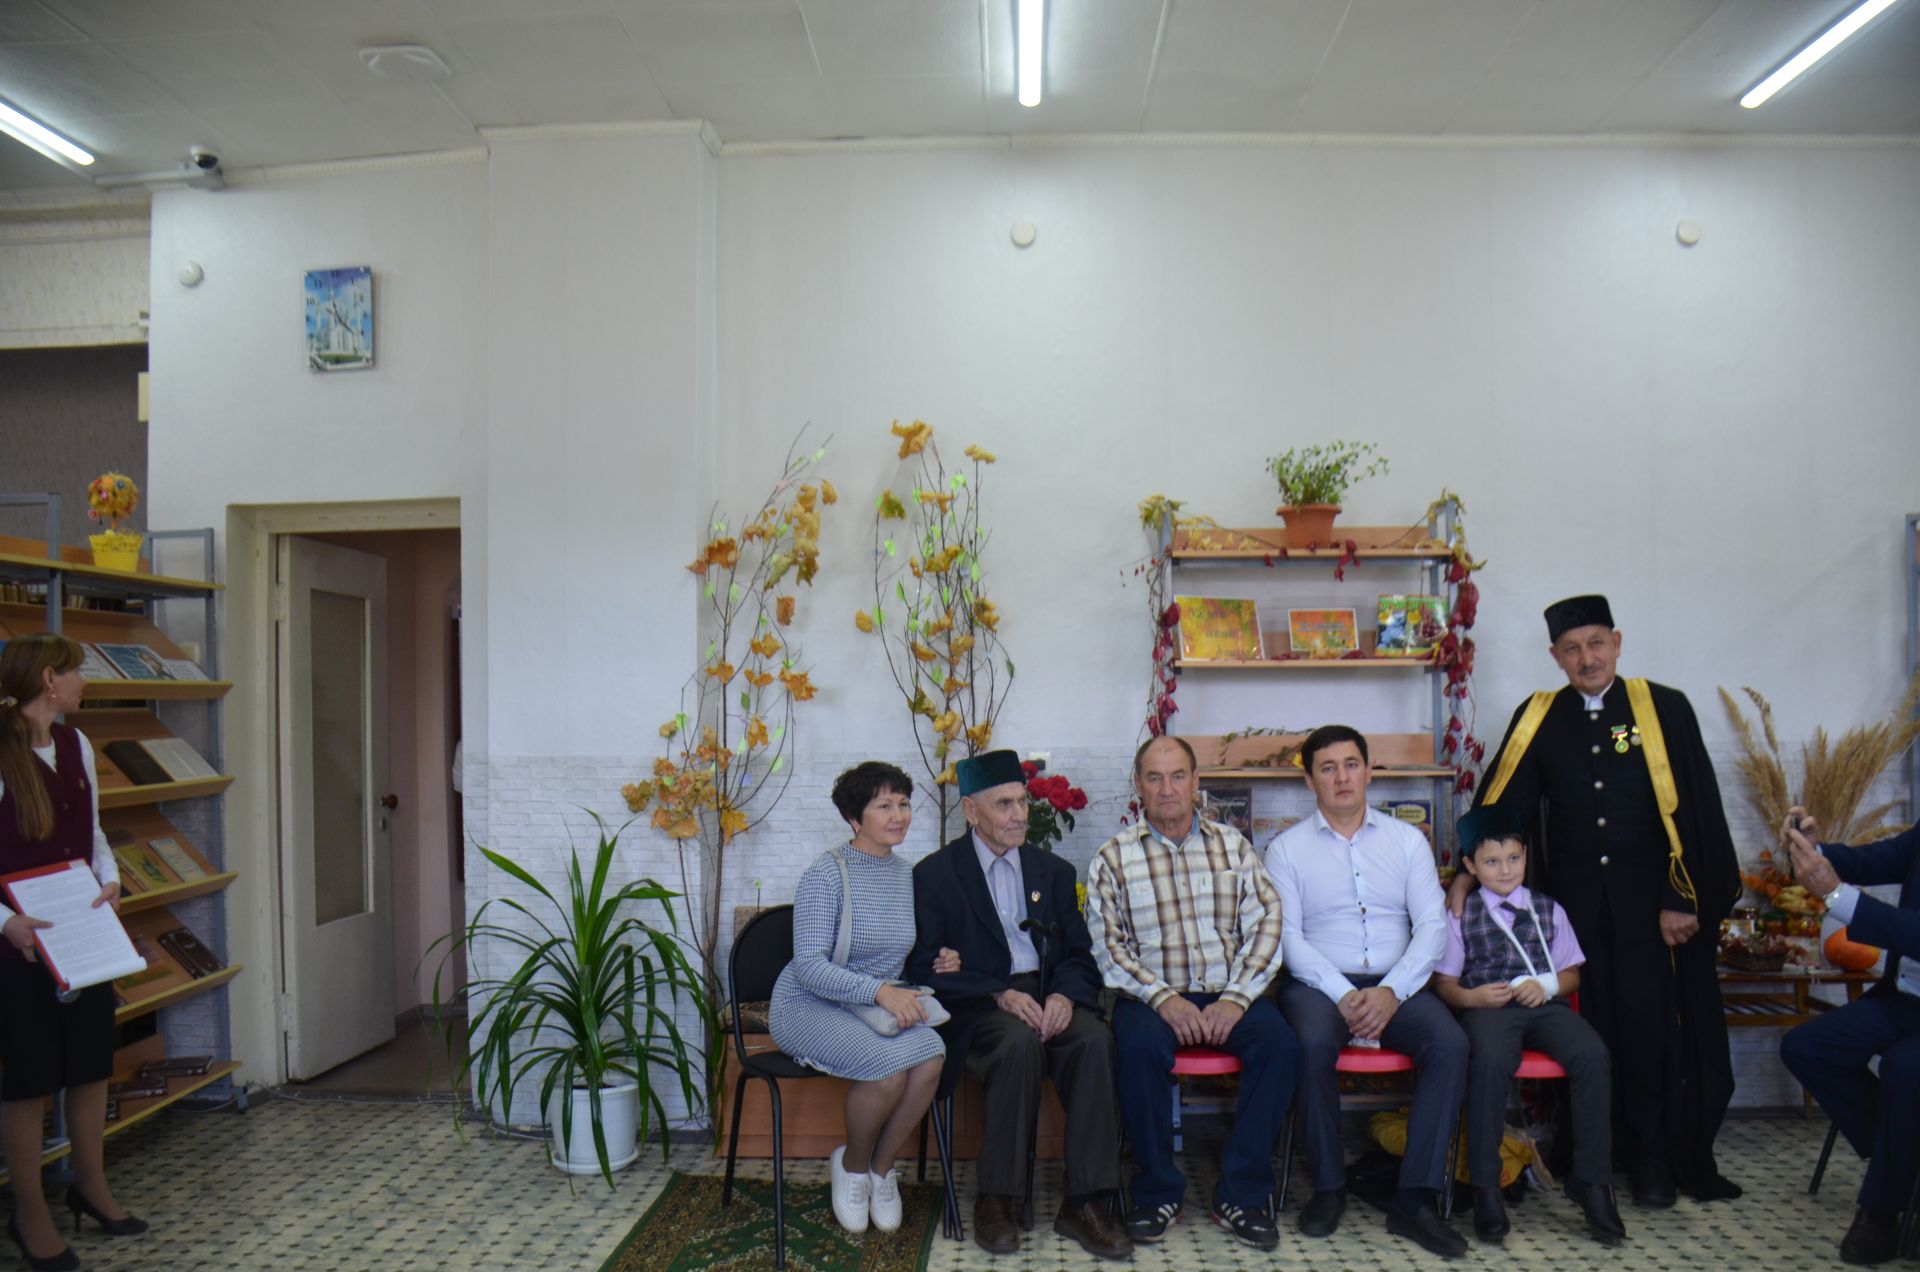 Внук Даута Губайди, ровесник города Агрыза Сагир Губайди принял участие на вечере памяти поэта (ФОТО)